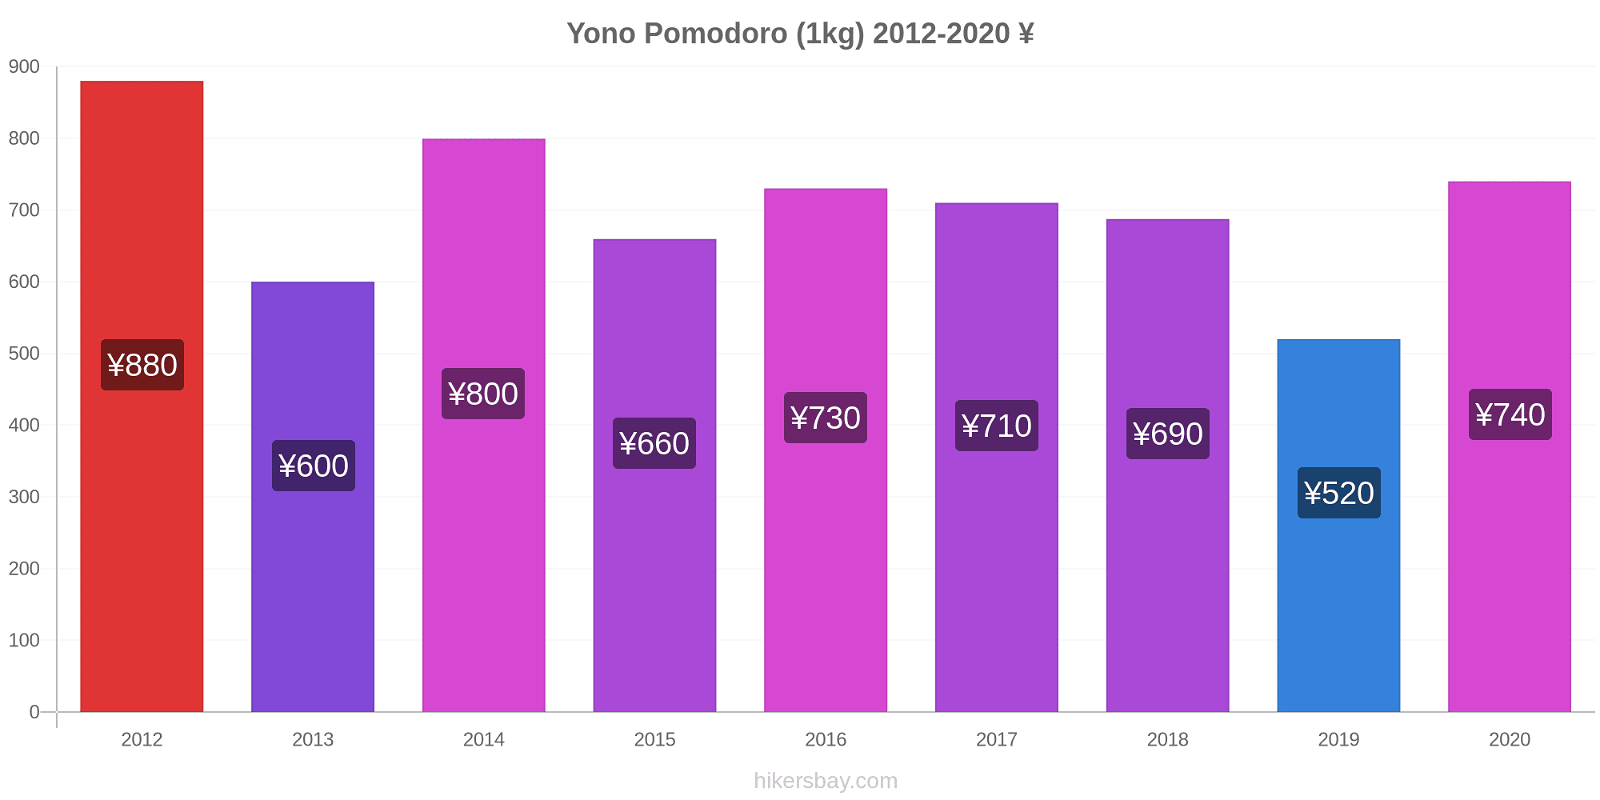 Yono variazioni di prezzo Pomodoro (1kg) hikersbay.com